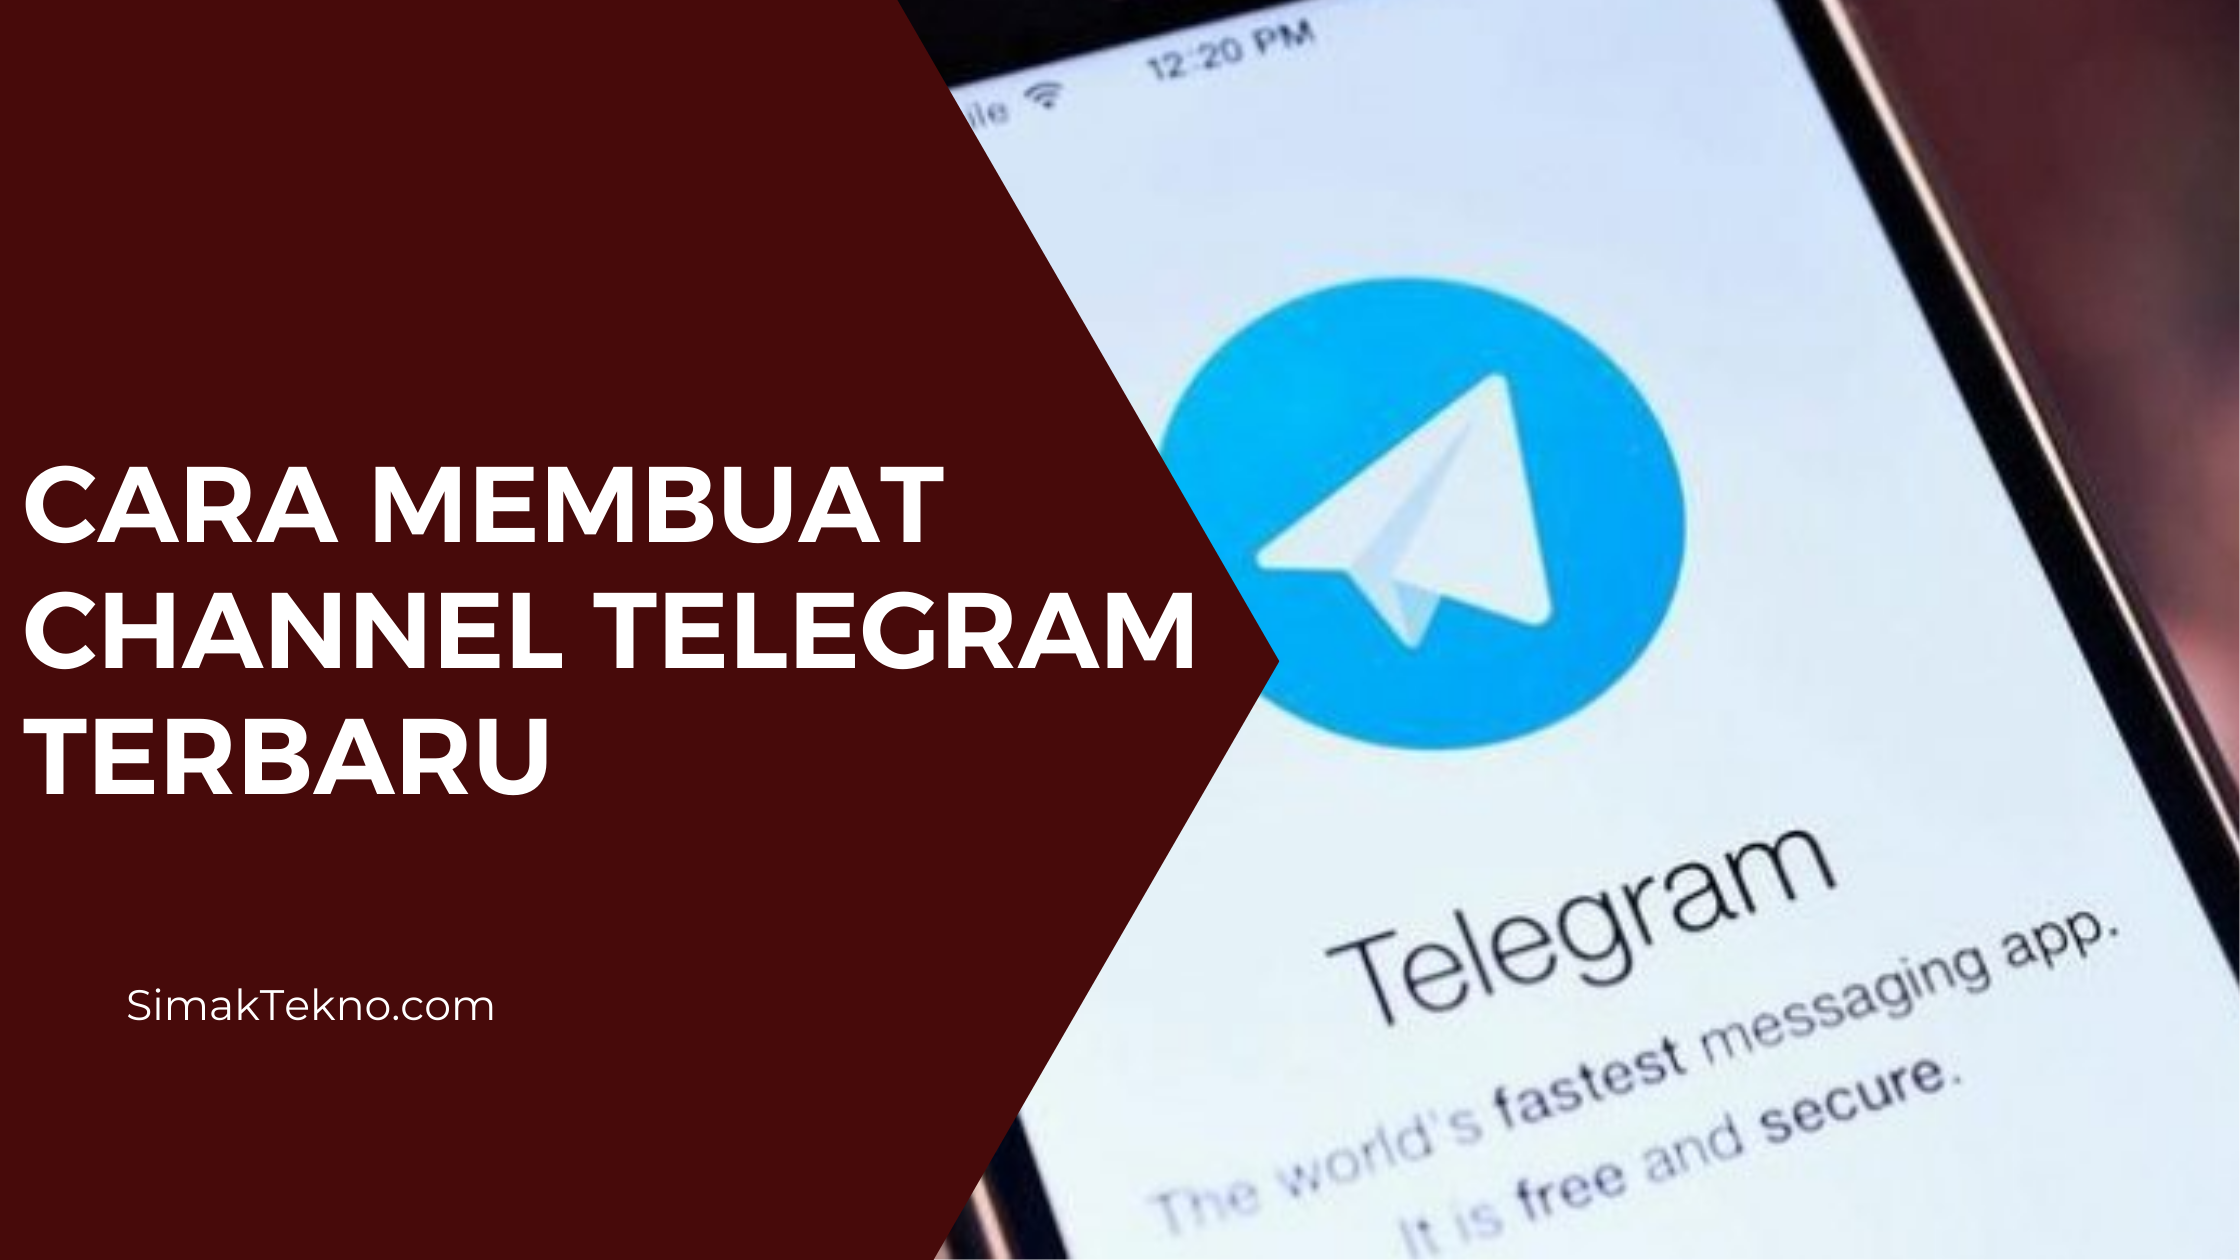 Cara Membuat Channel Telegram Lengkap